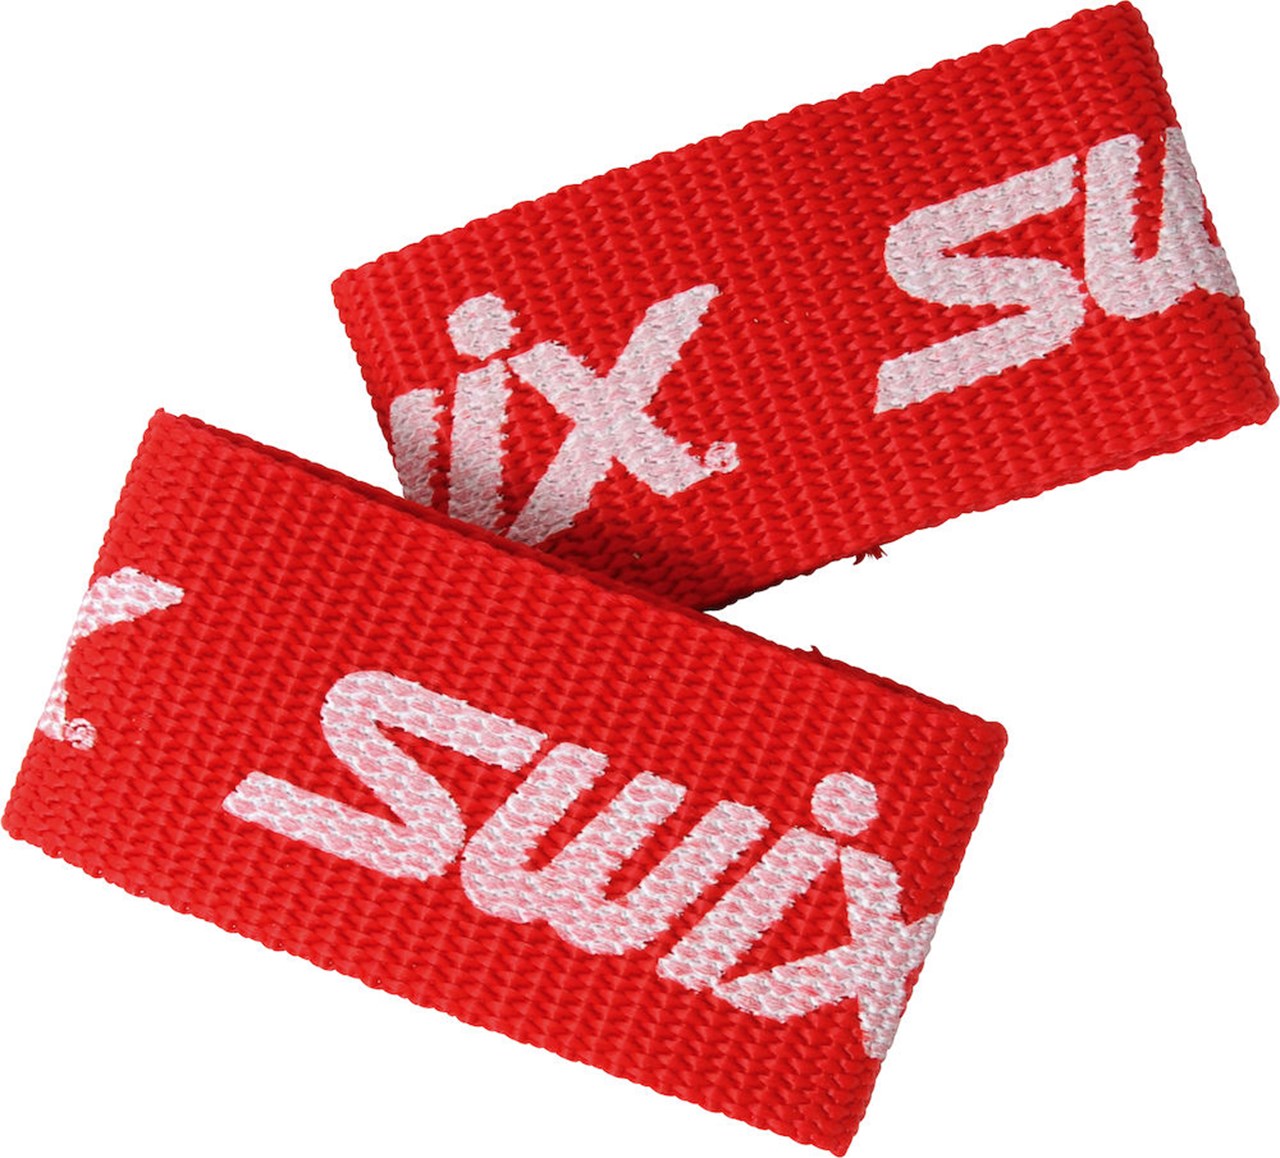 SWIX Ski - Zubehör online kaufen | skiwachs-swix.com